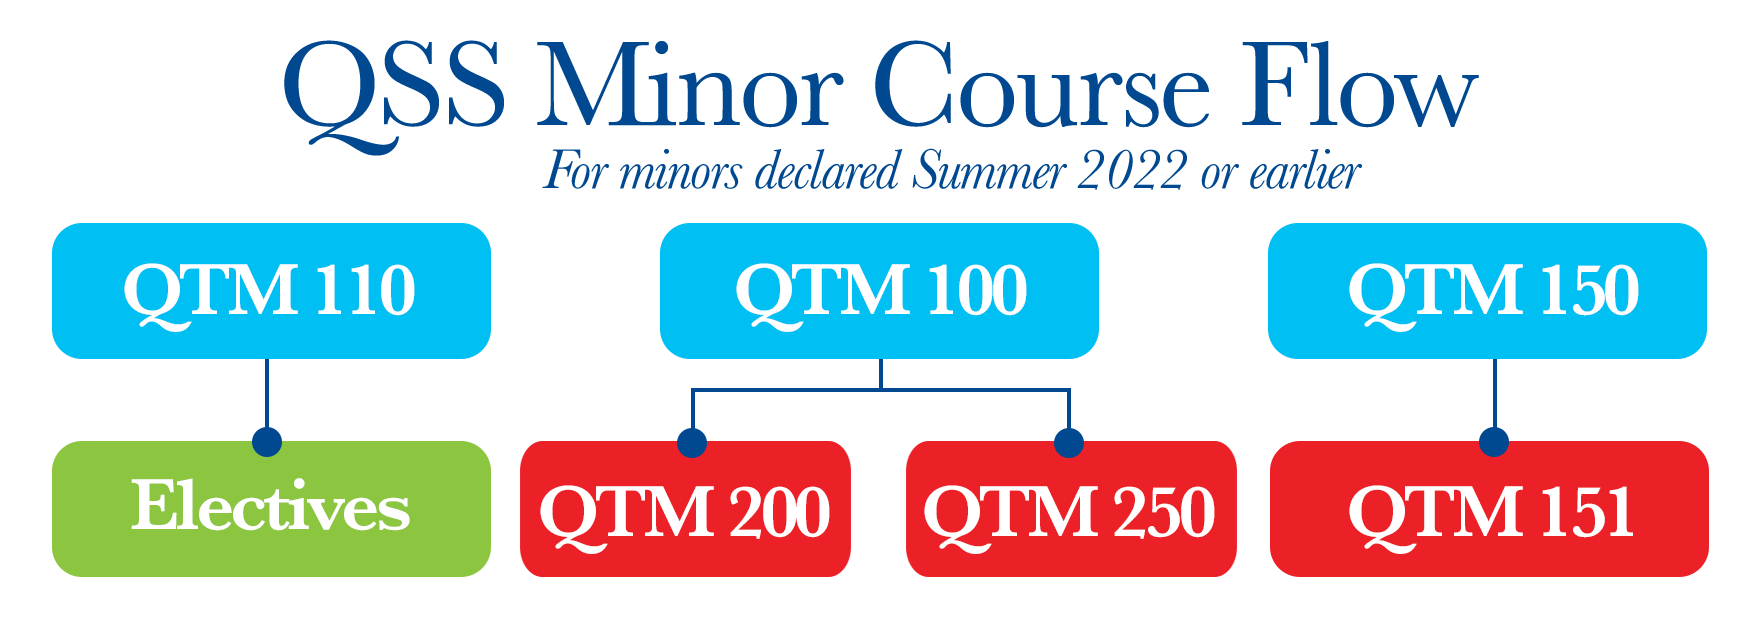 QSS-minor-course-flowchart-pre2022.png